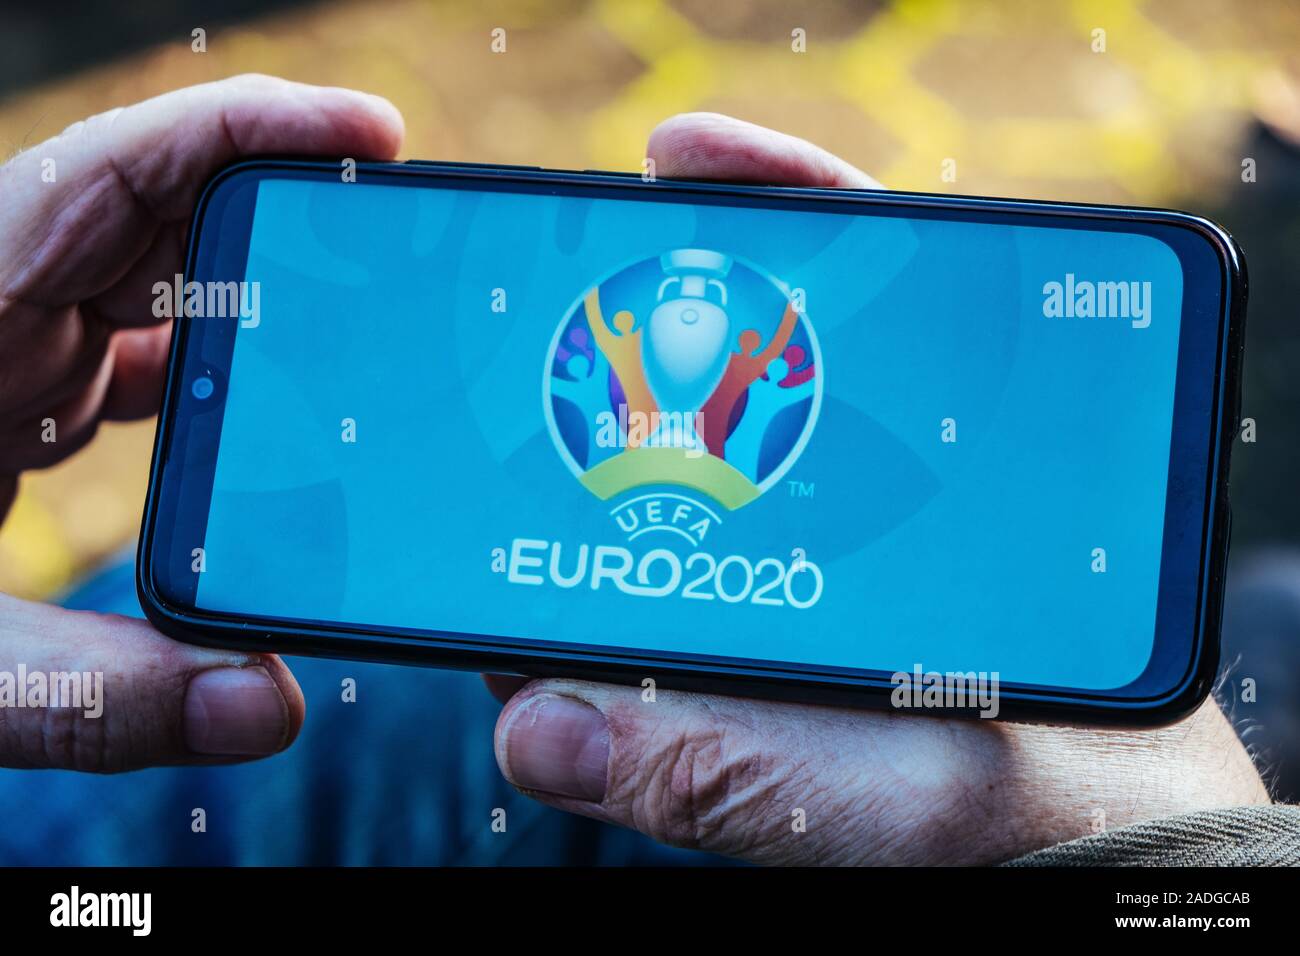 L'uomo anziano è in possesso di uno smartphone con il logo di UEFA EURO 2020 sullo schermo Foto Stock